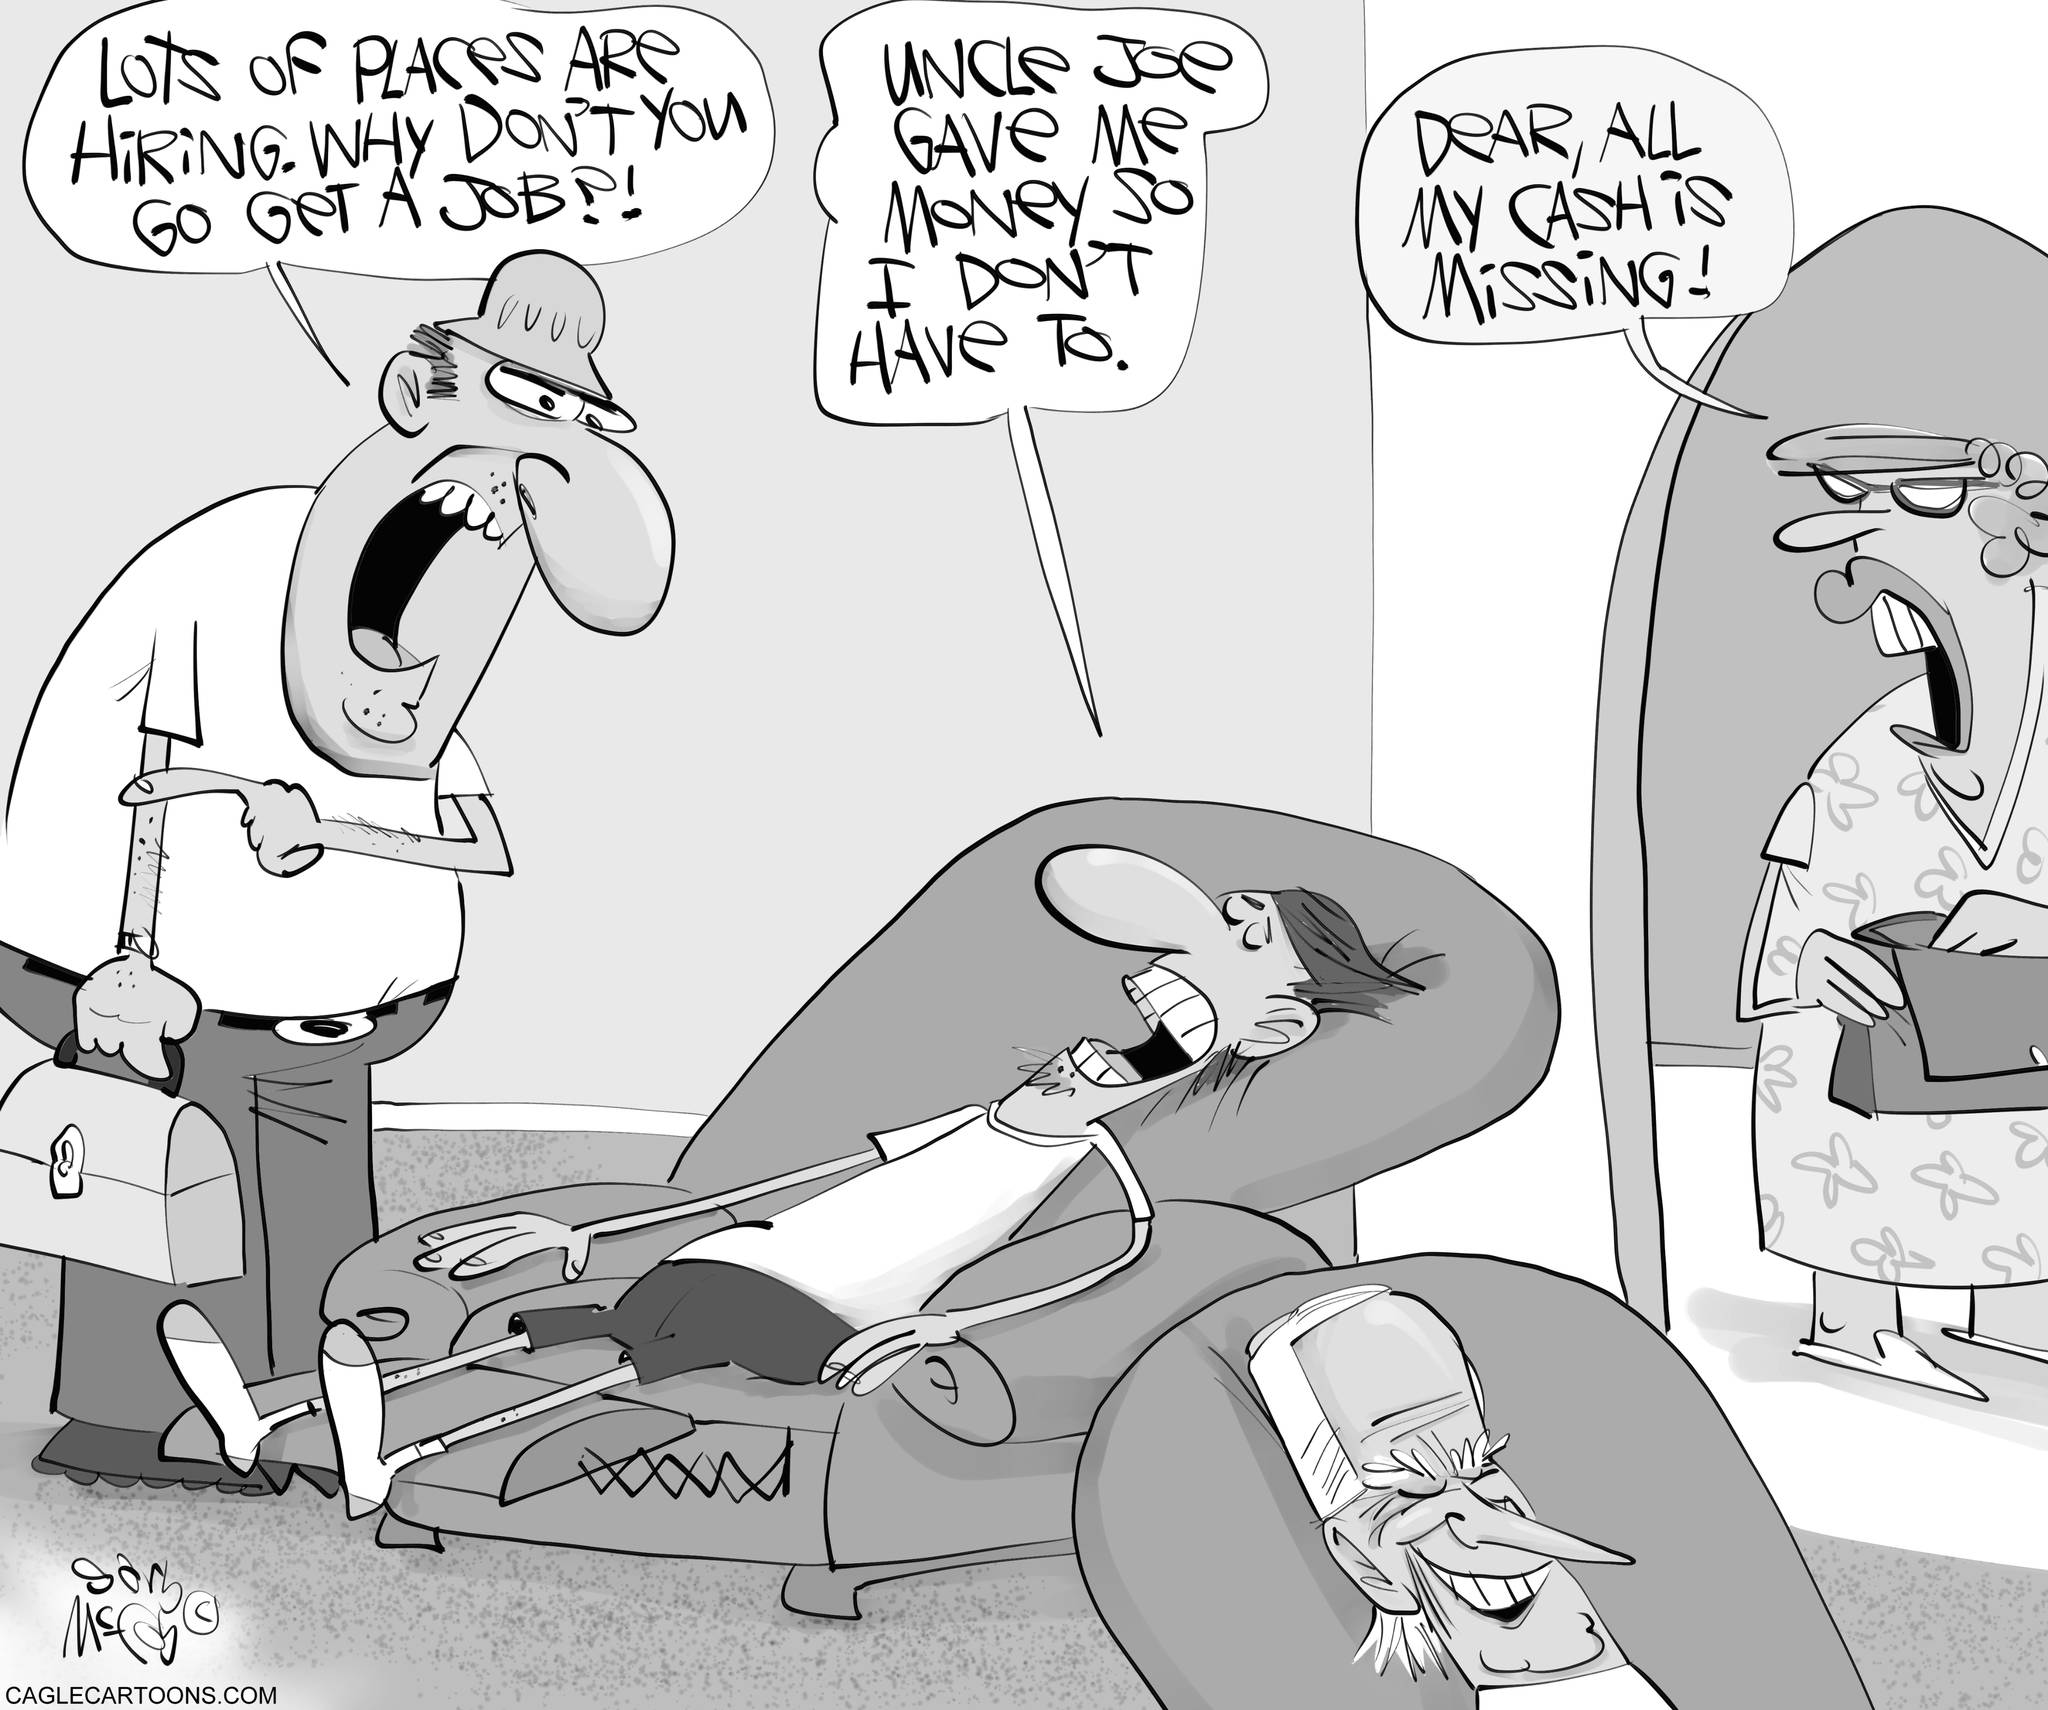 Gary McCoy/CagleCartoons.com